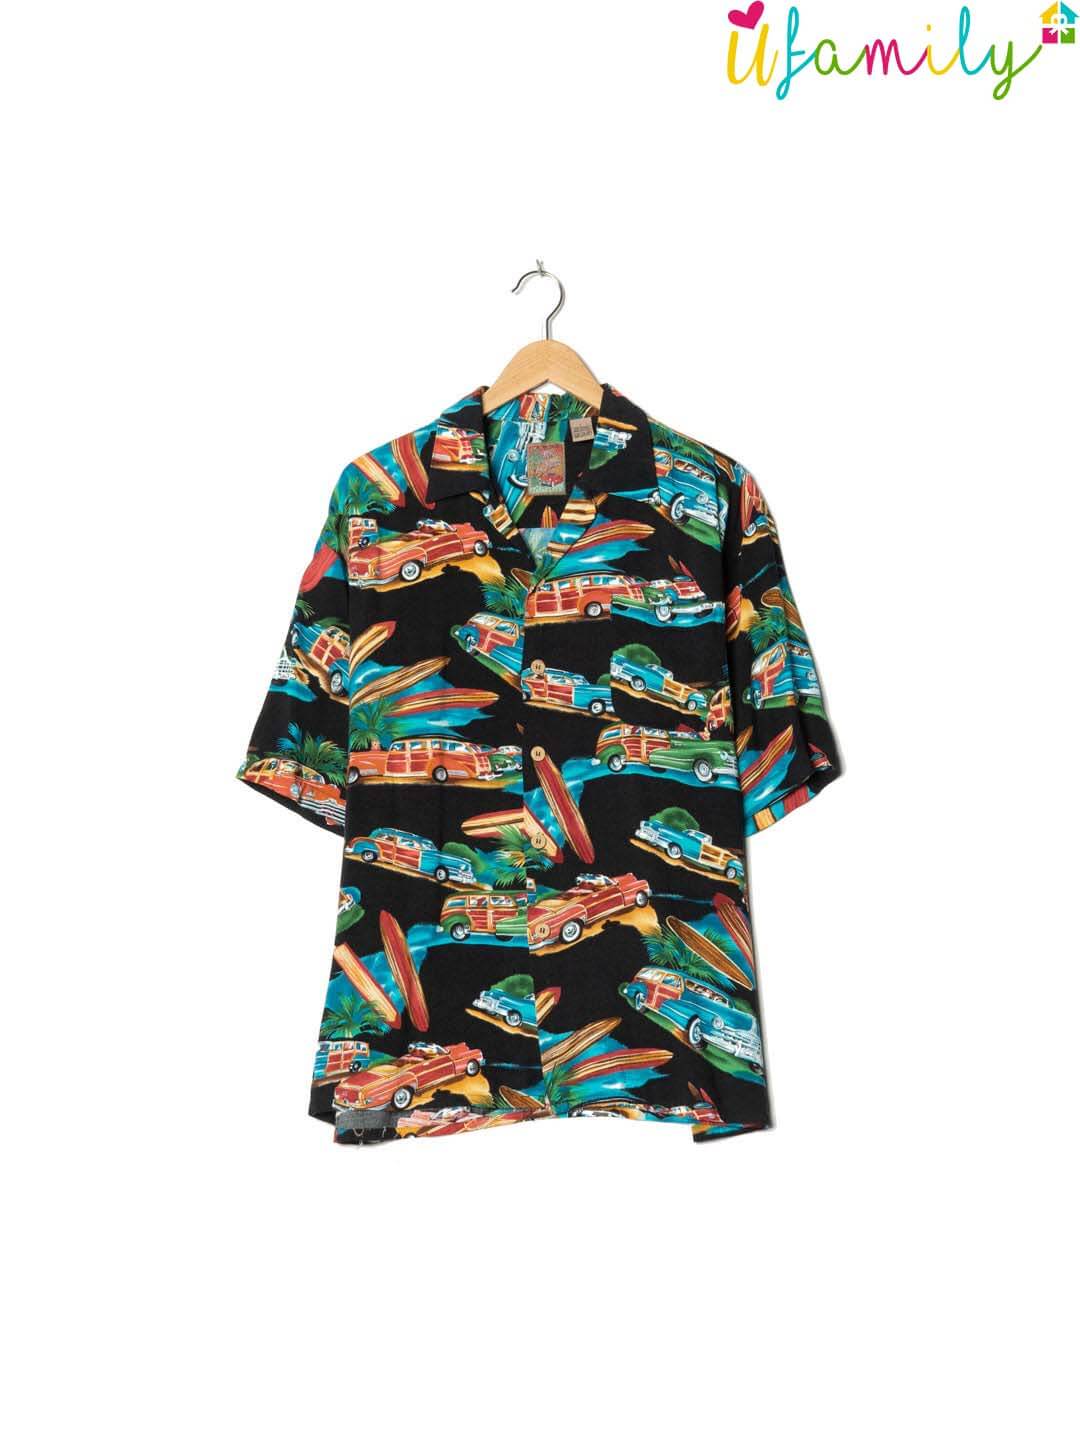 Next Original Black Vintage Hawaiian Shirt